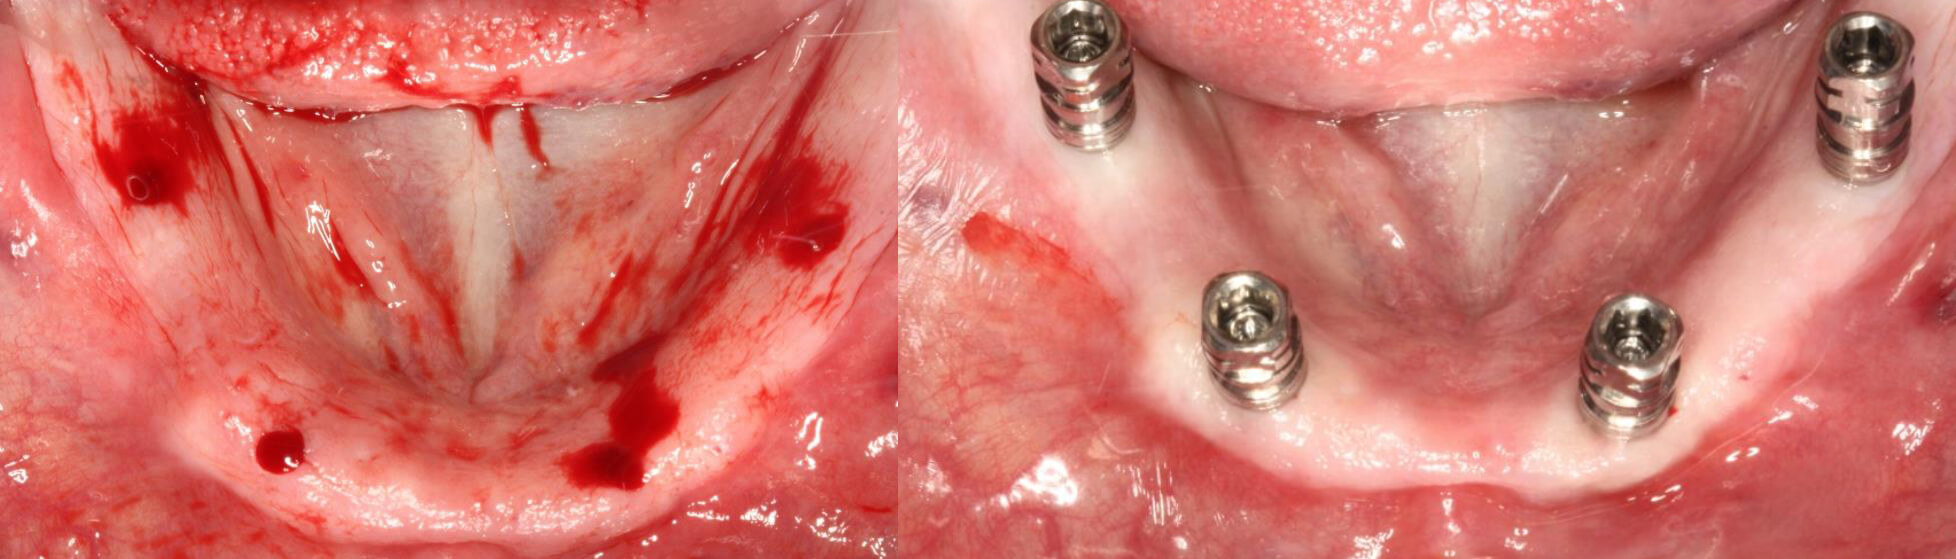 Detalle del fresado Y Vista de los implantes colocados